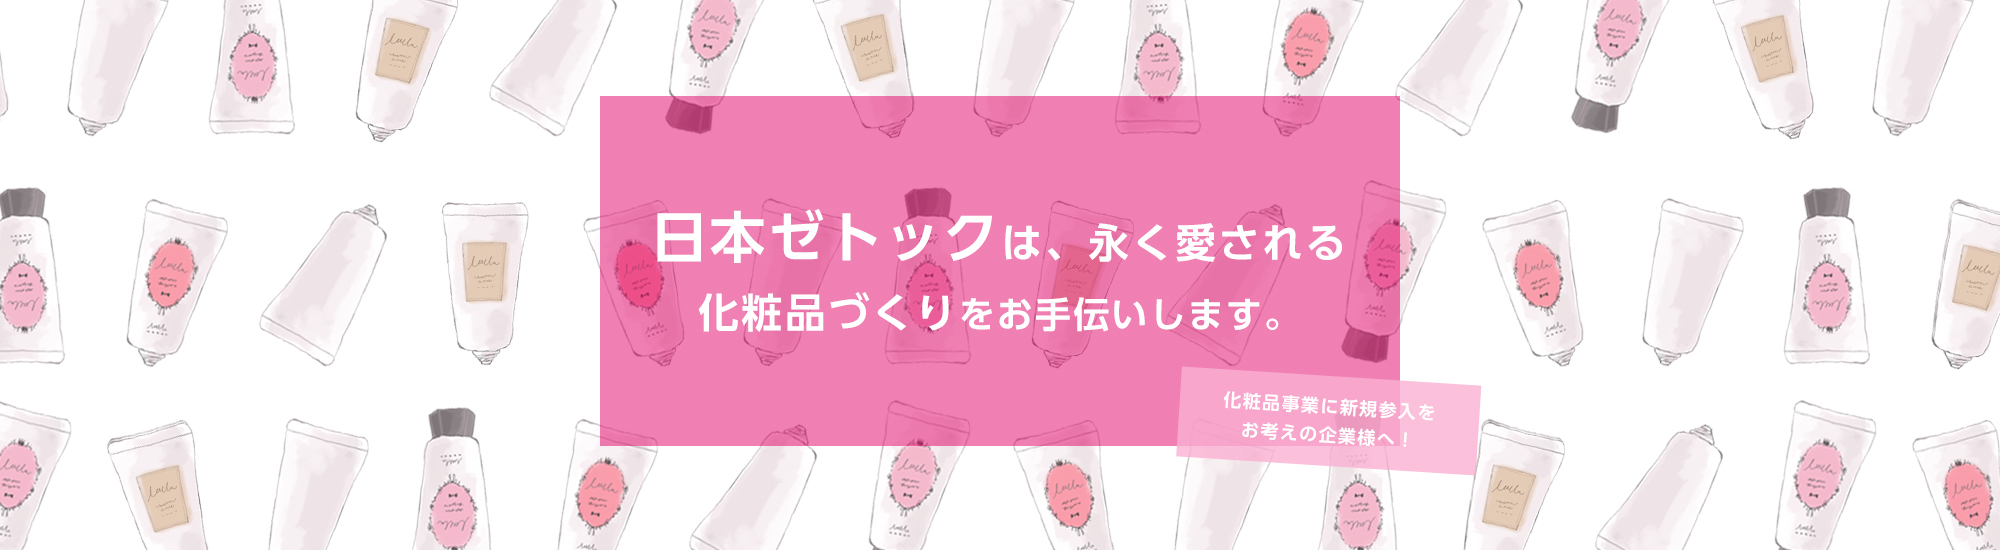 日本ゼットクは、永く愛される化粧品づくりをお手伝いします。